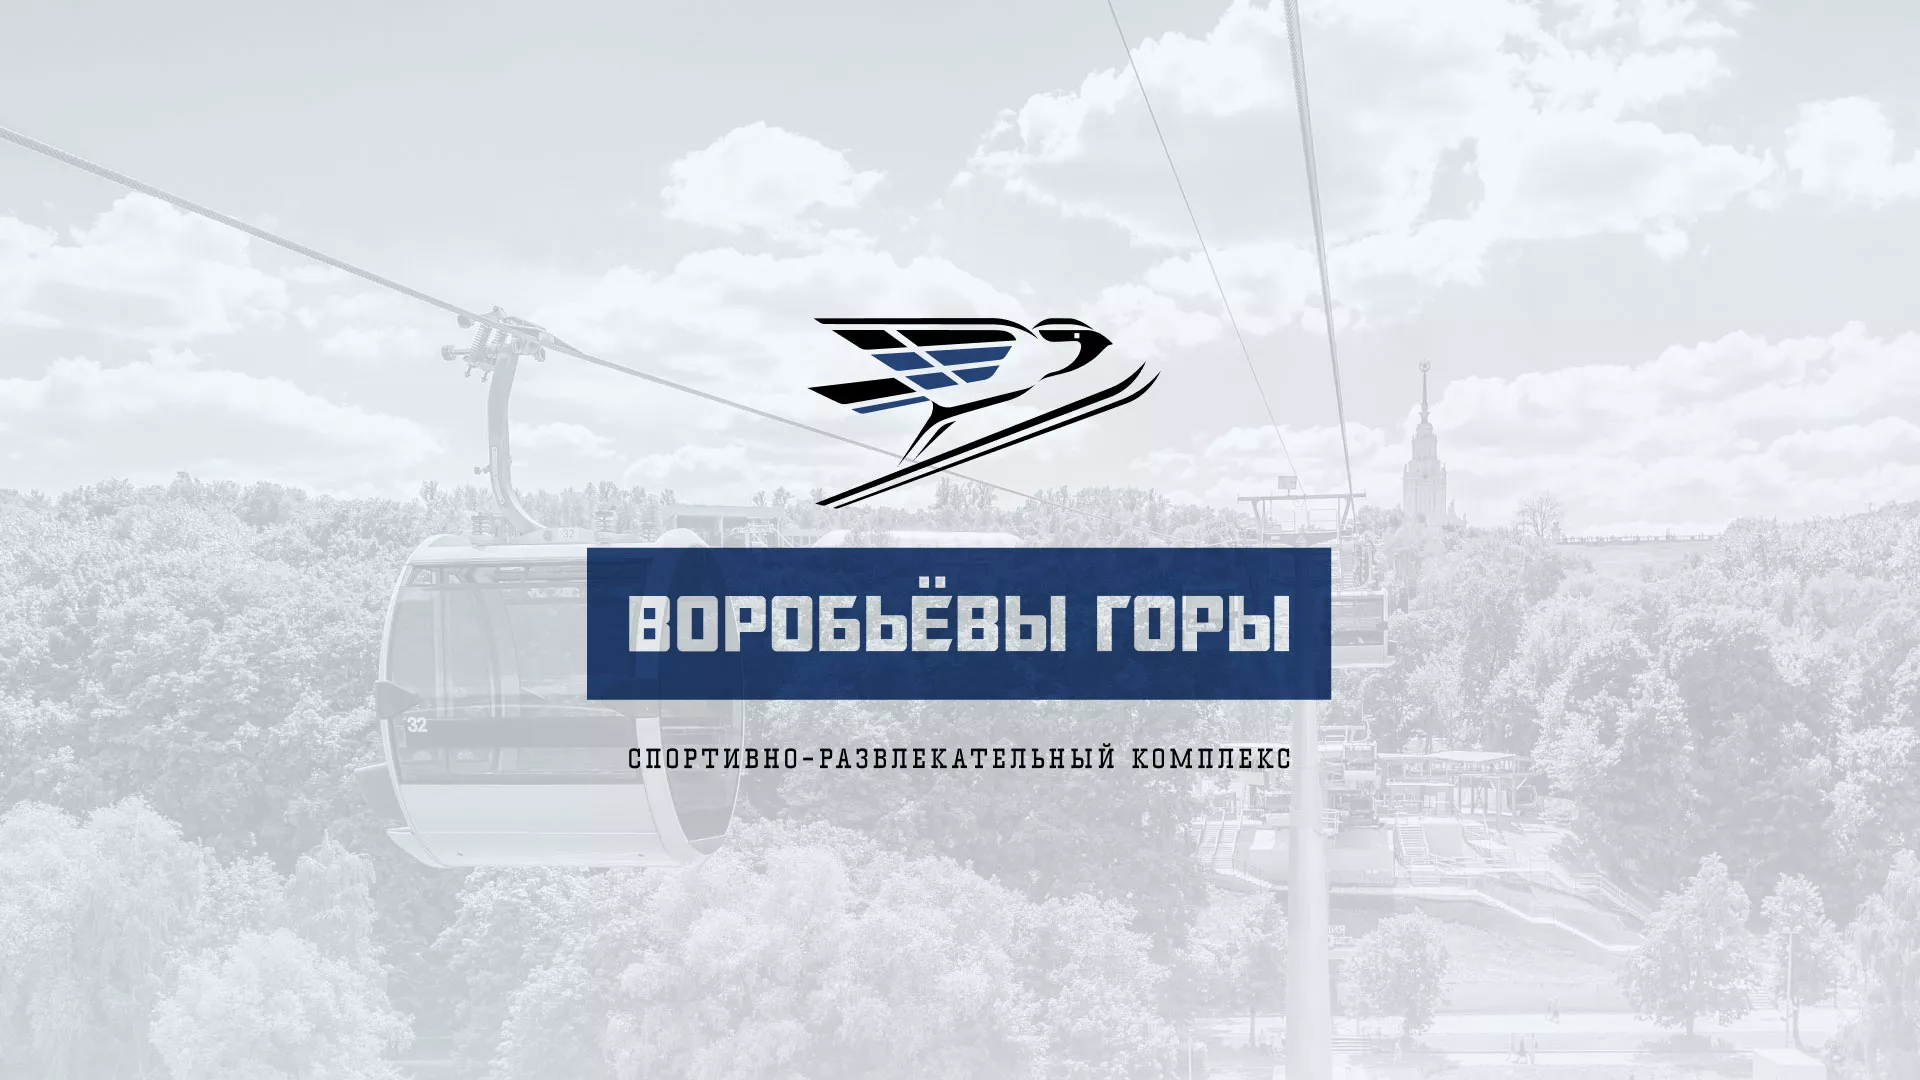 Разработка сайта в Гвардейске для спортивно-развлекательного комплекса «Воробьёвы горы»